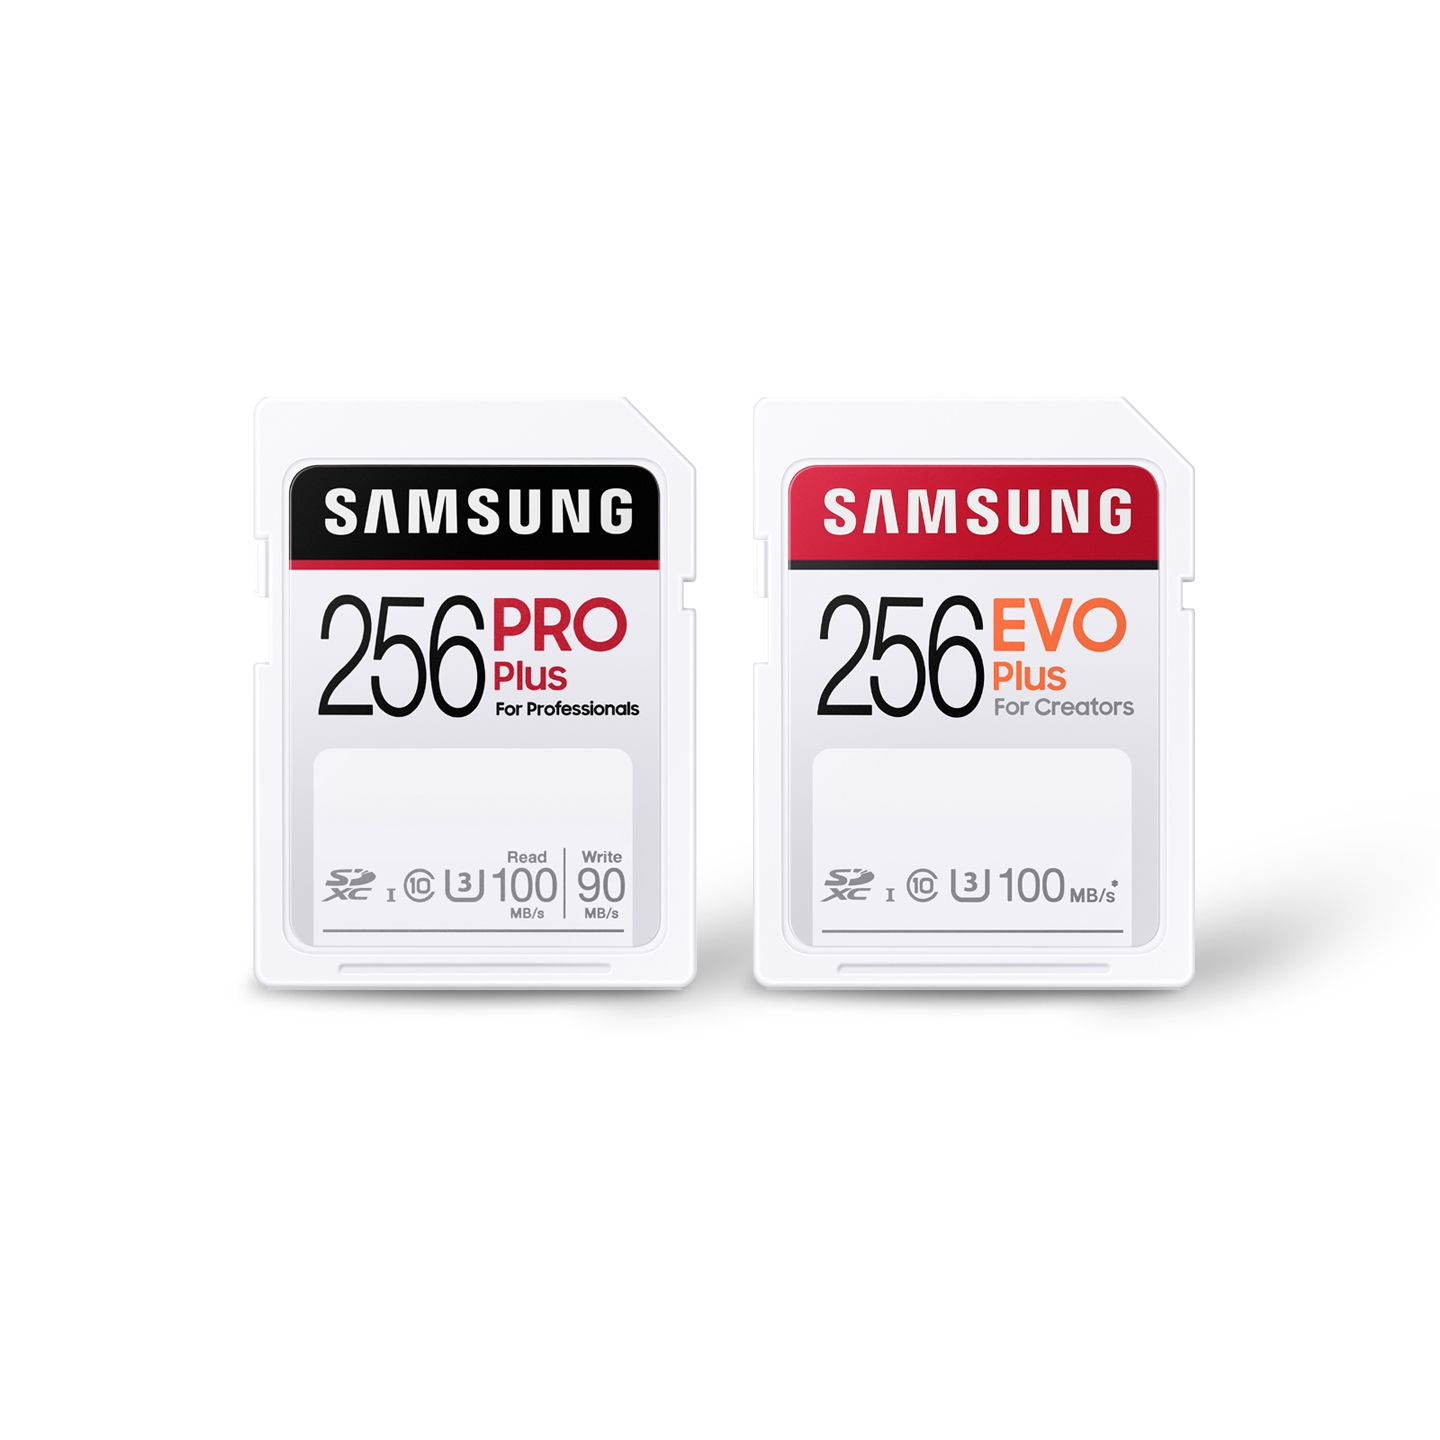 Forløber sekstant kontakt Samsung Memory Cards – Learn More | Samsung US